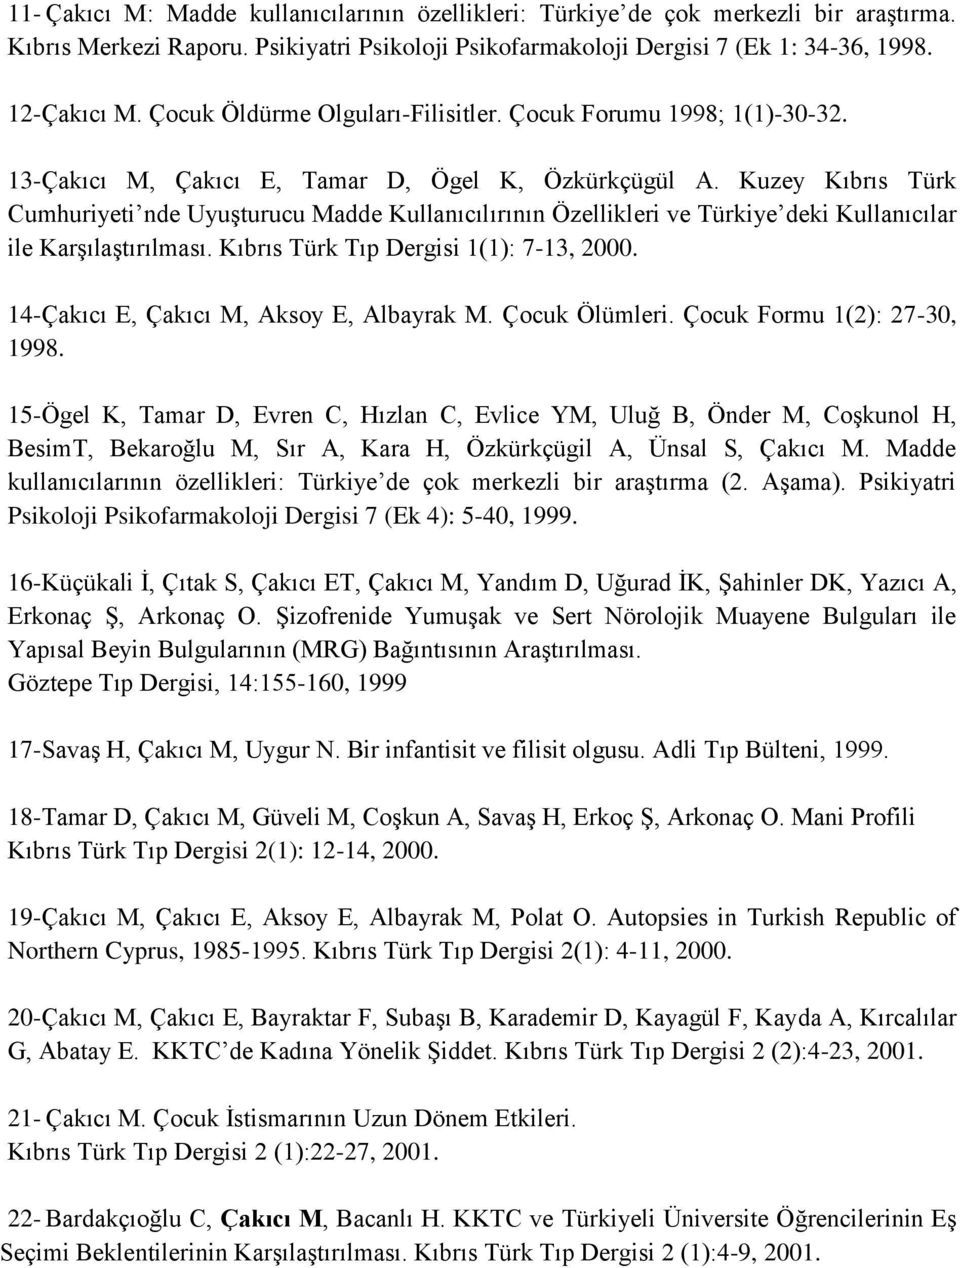 Kuzey Kıbrıs Türk Cumhuriyeti nde Uyuşturucu Madde Kullanıcılırının Özellikleri ve Türkiye deki Kullanıcılar ile Karşılaştırılması. Kıbrıs Türk Tıp Dergisi 1(1): 7-13, 2000.